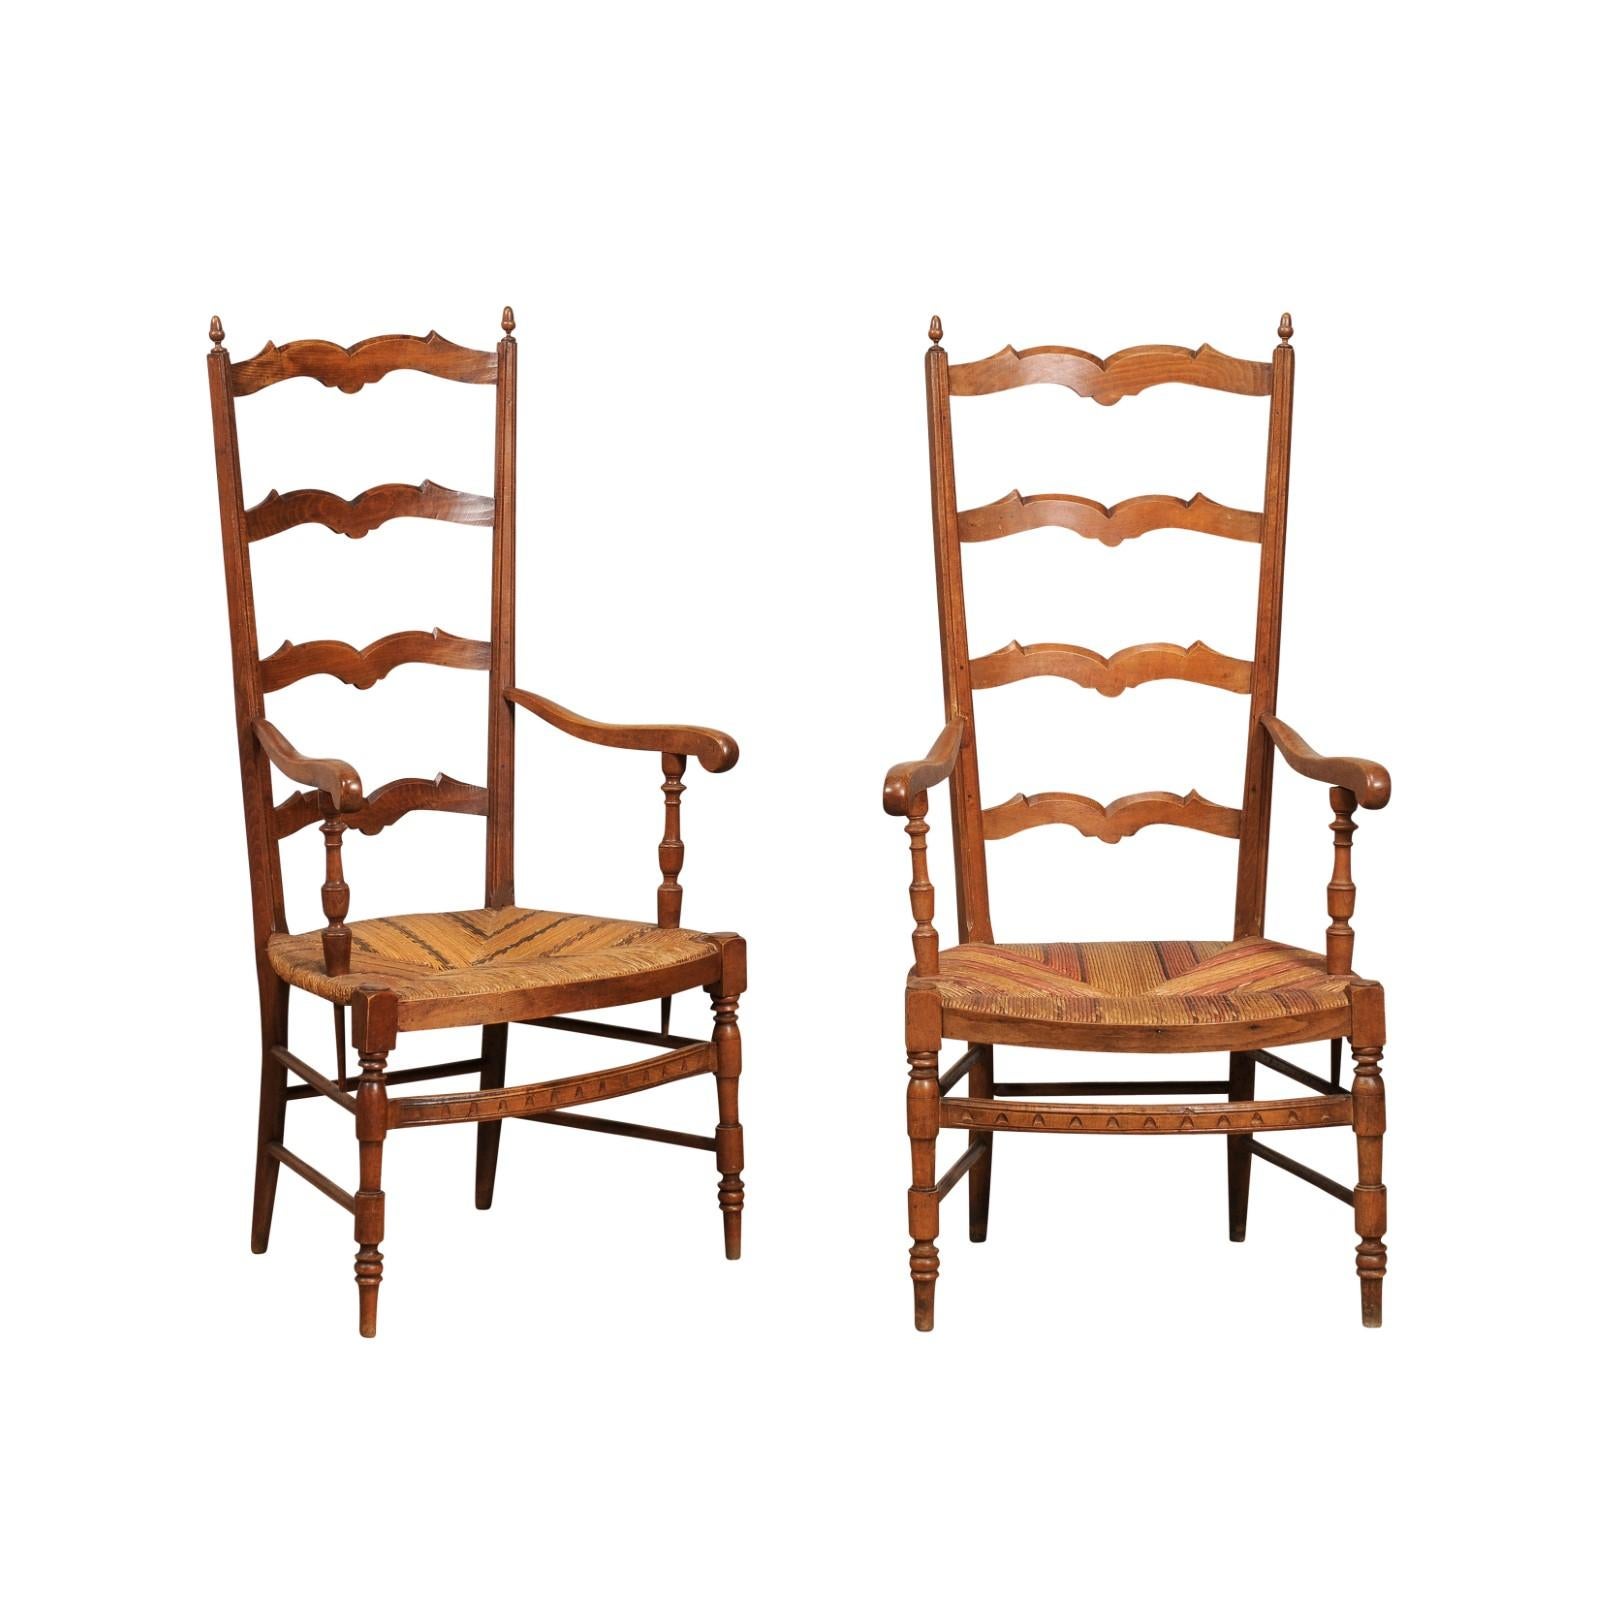 Ein Paar französische Stühle aus Obstholz mit geflochtenen Strohsitzen, gedrechselten Beinen und gebogenen Stäben, um 1890. Lassen Sie sich von dem rustikalen Charme und der zeitlosen Eleganz dieser französischen Obstholzstühle mit Leiterlehne aus